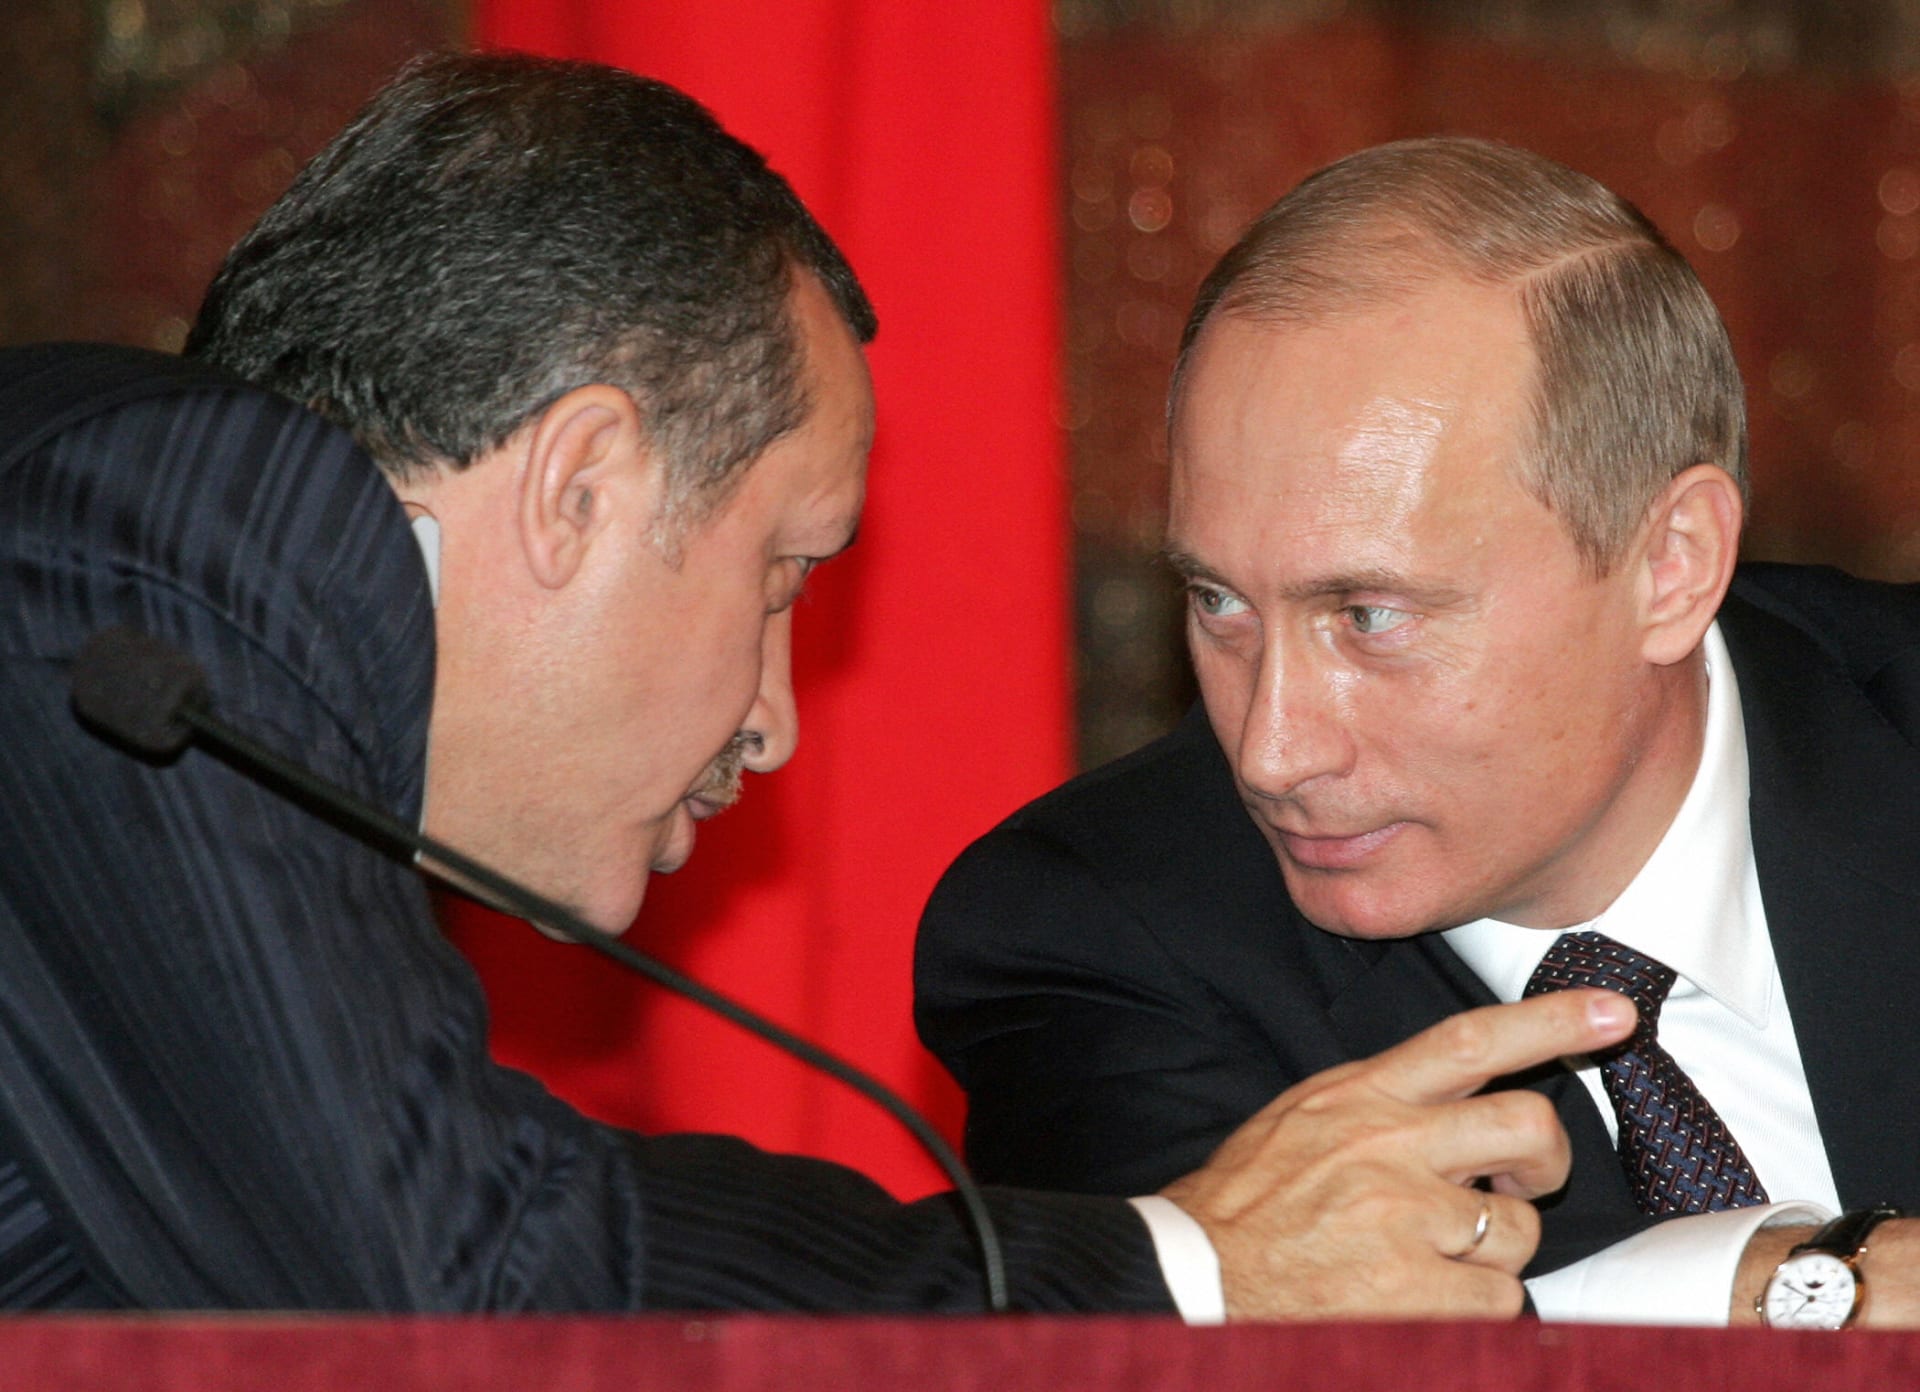 أنقرة وموسكو تعلنان الاتفاق على "تطوير العلاقات".. بعد أشهر من التهديد والوعيد المتبادل إثر إسقاط تركيا المقاتلة الروسية